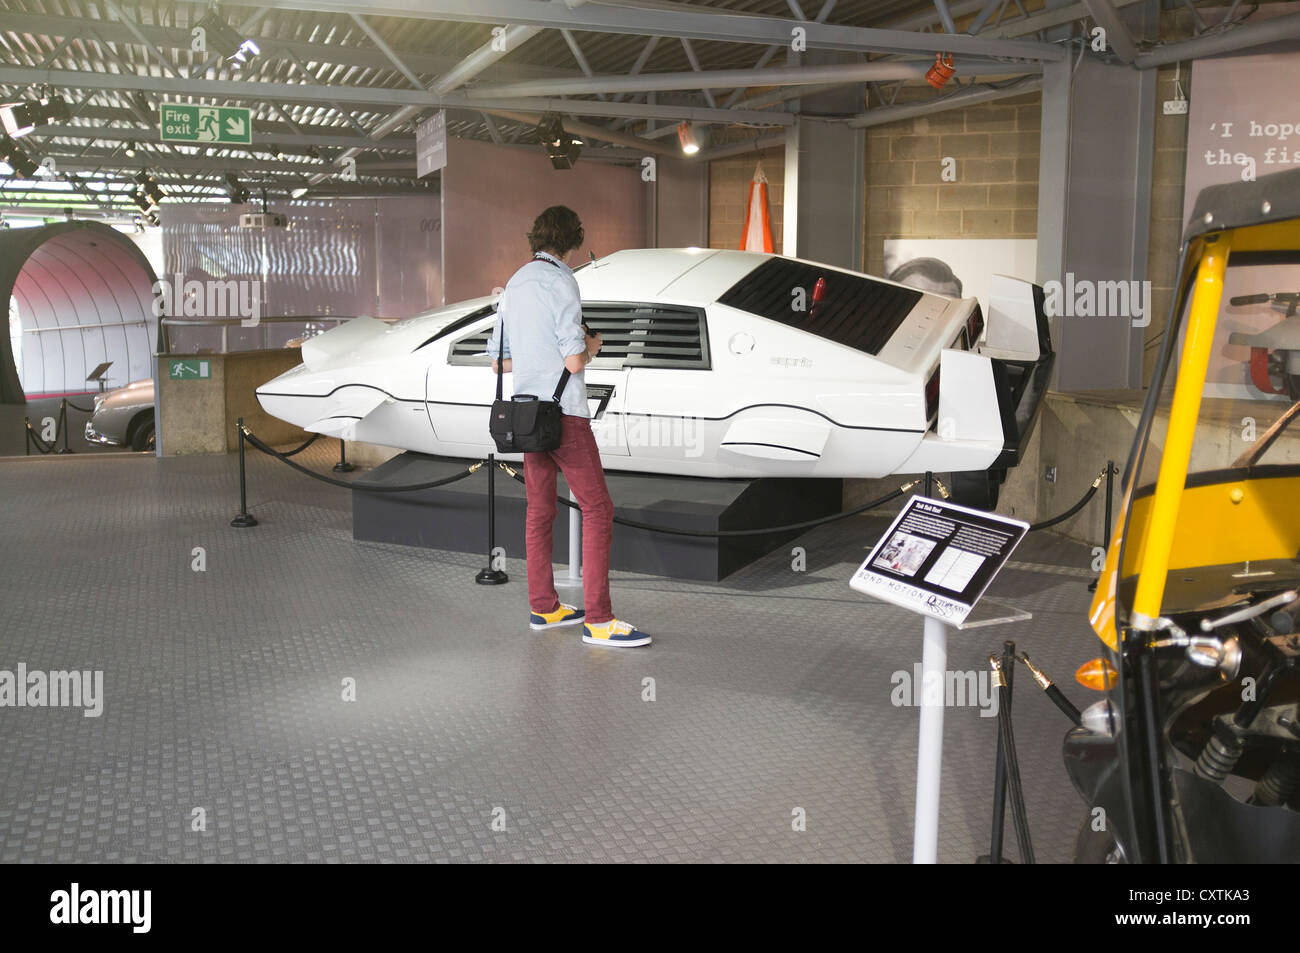 dh National Motor Museum UK BEAULIEU MUSÉES HAMPSHIRE ENGLAND Man Regarder 1977 visiteurs de l'exposition de voiture de Lotus Esprit James Bond exposition Banque D'Images